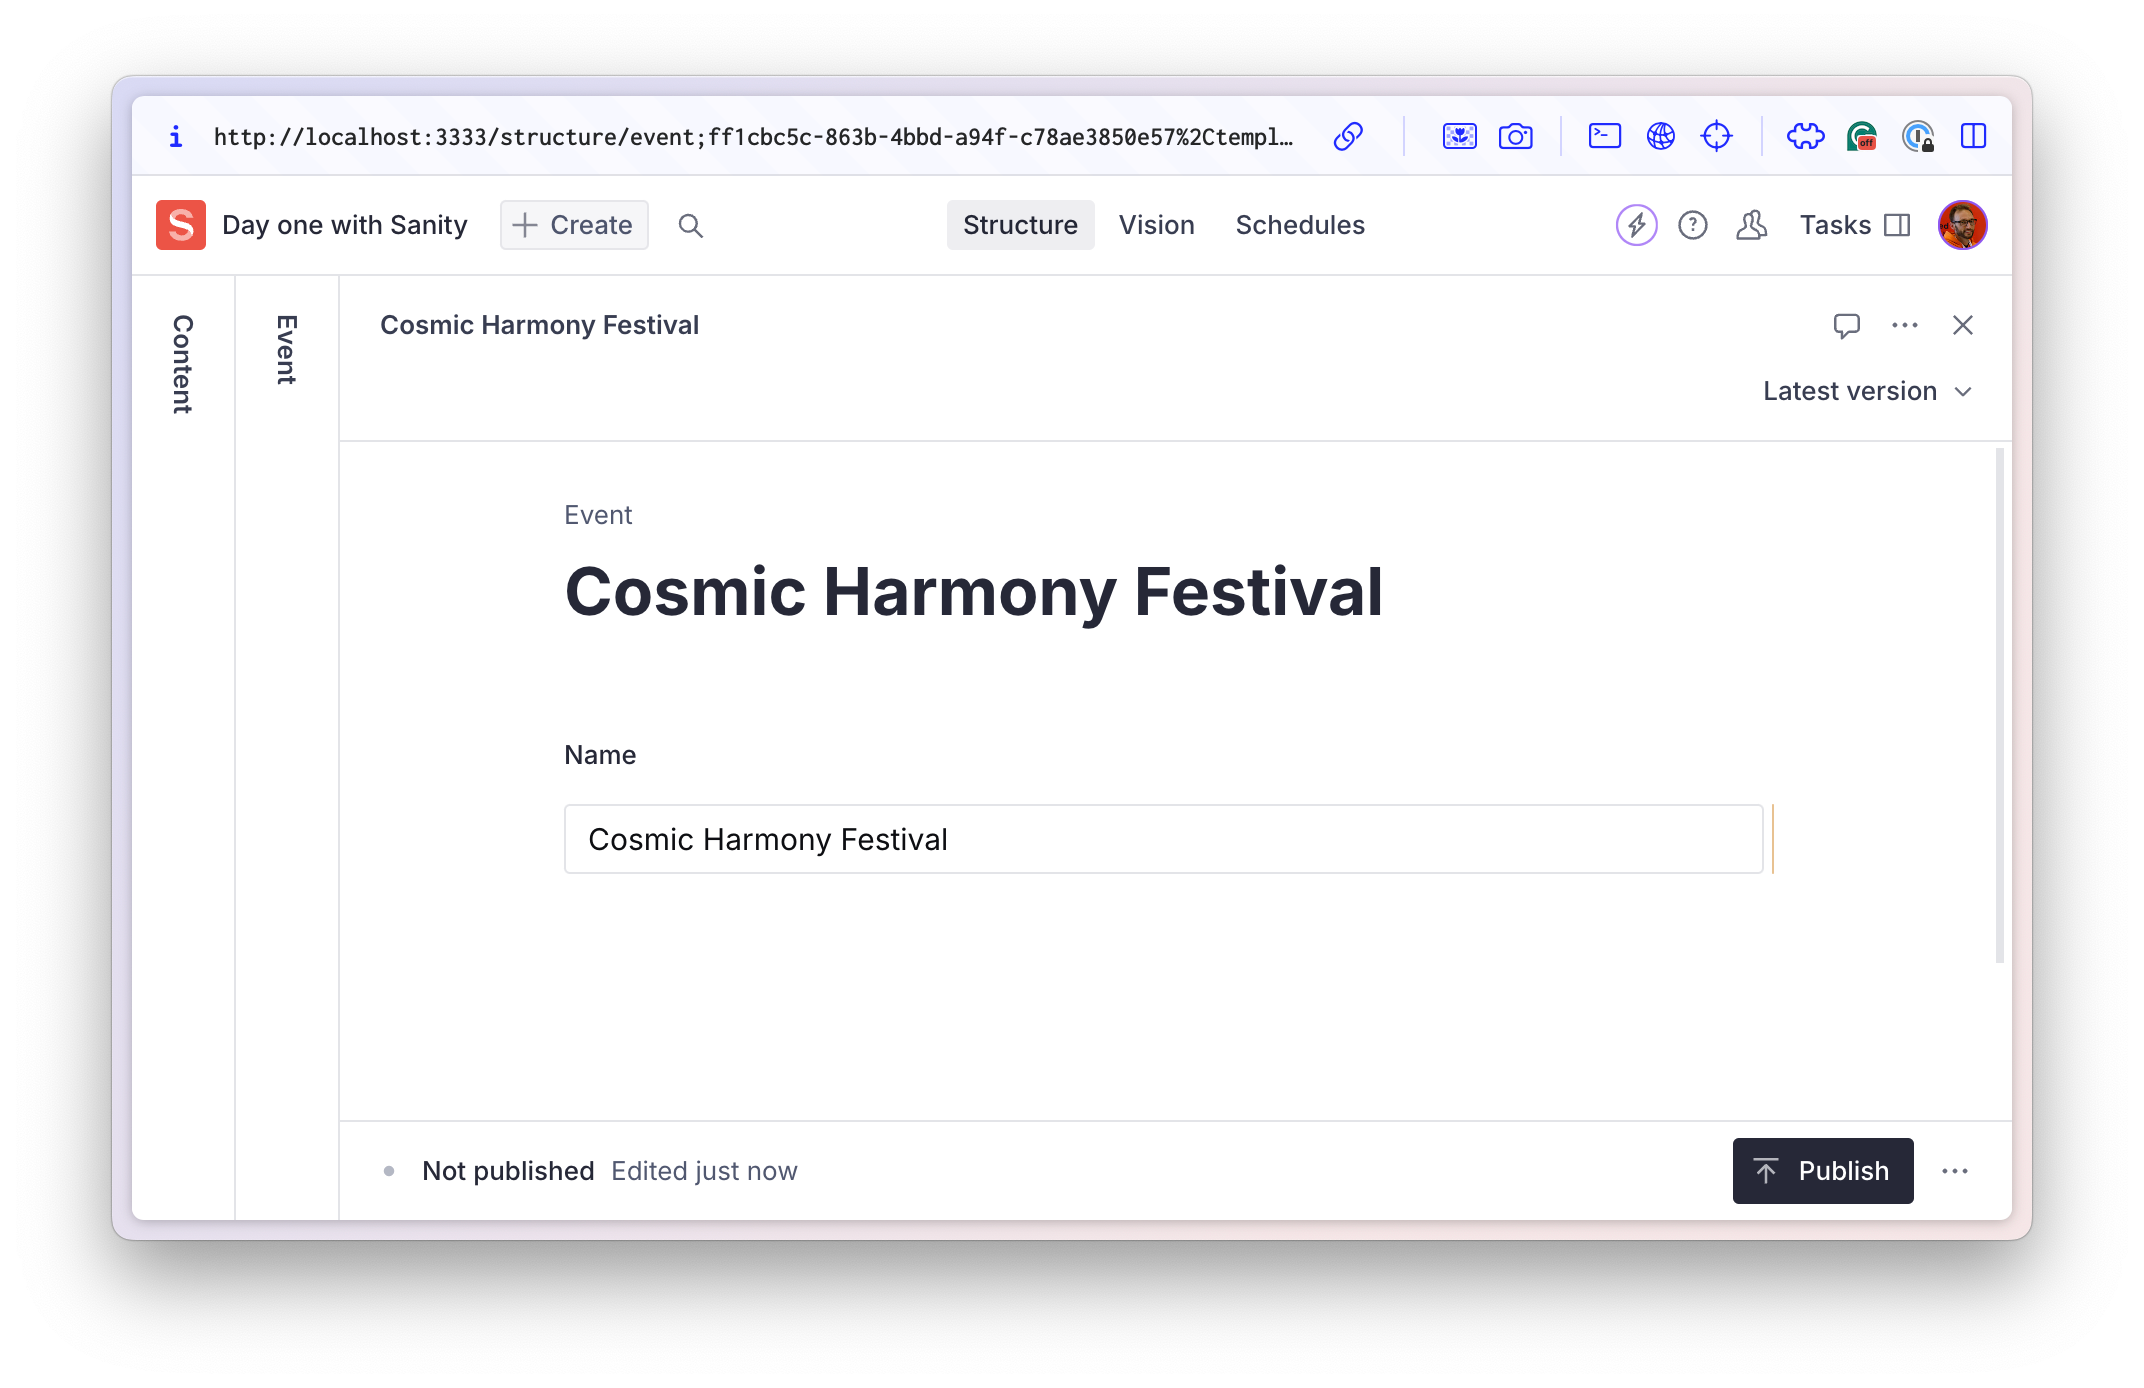 New Sanity Studio event document showing "Cosmic Harmony Festival"